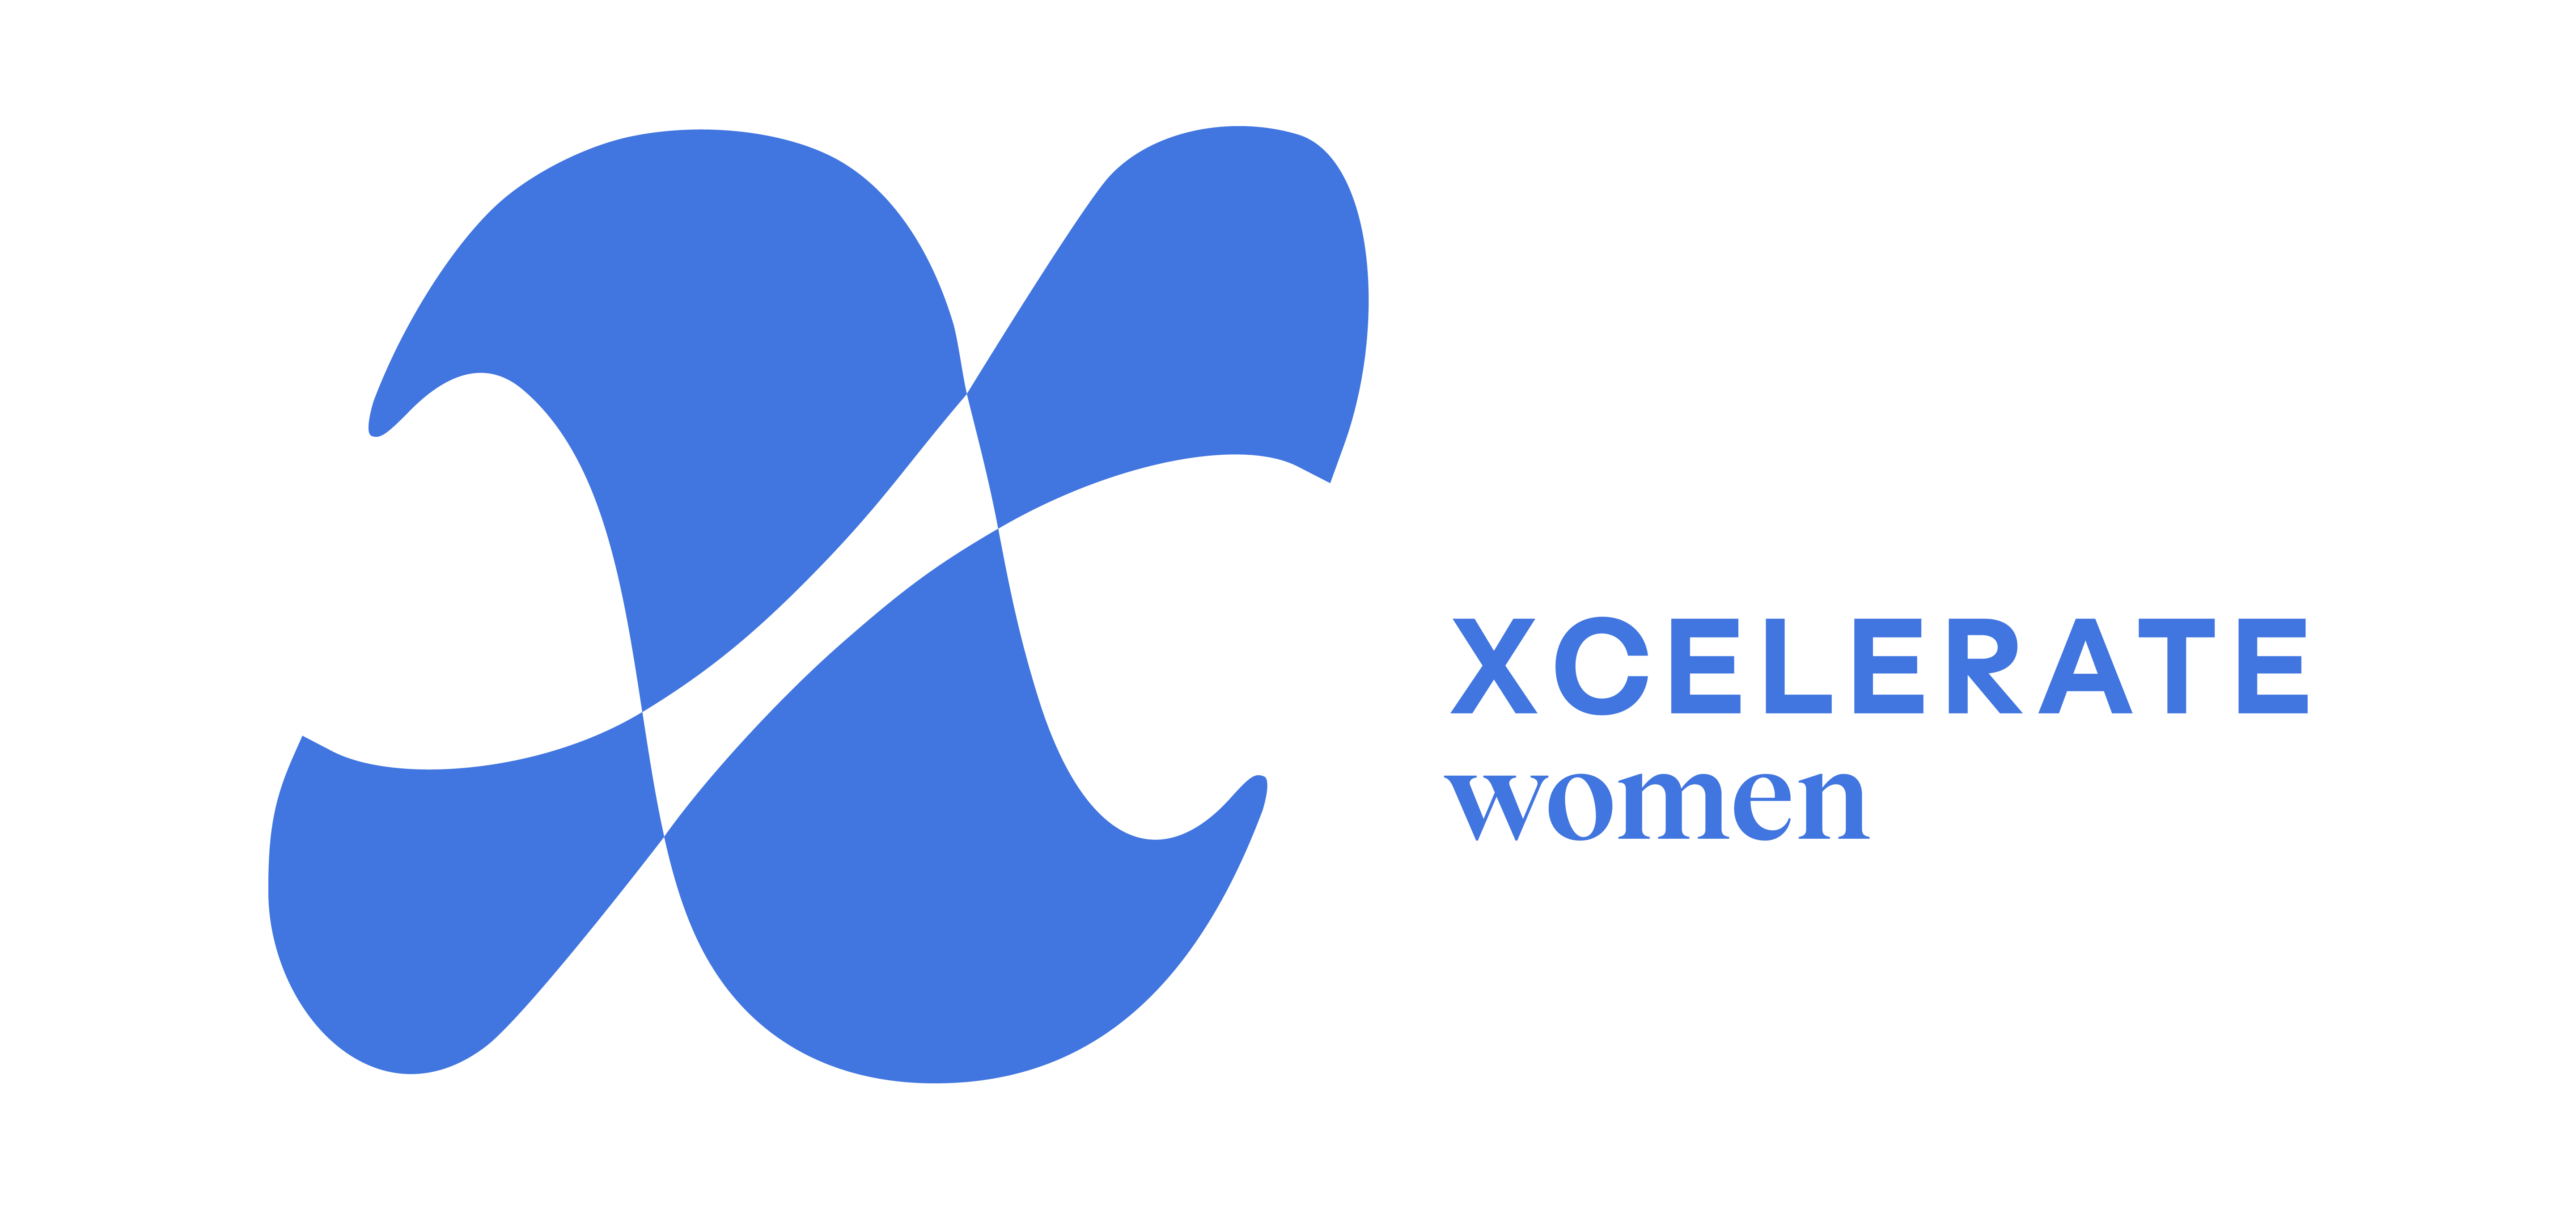 Xcelerate Women logo